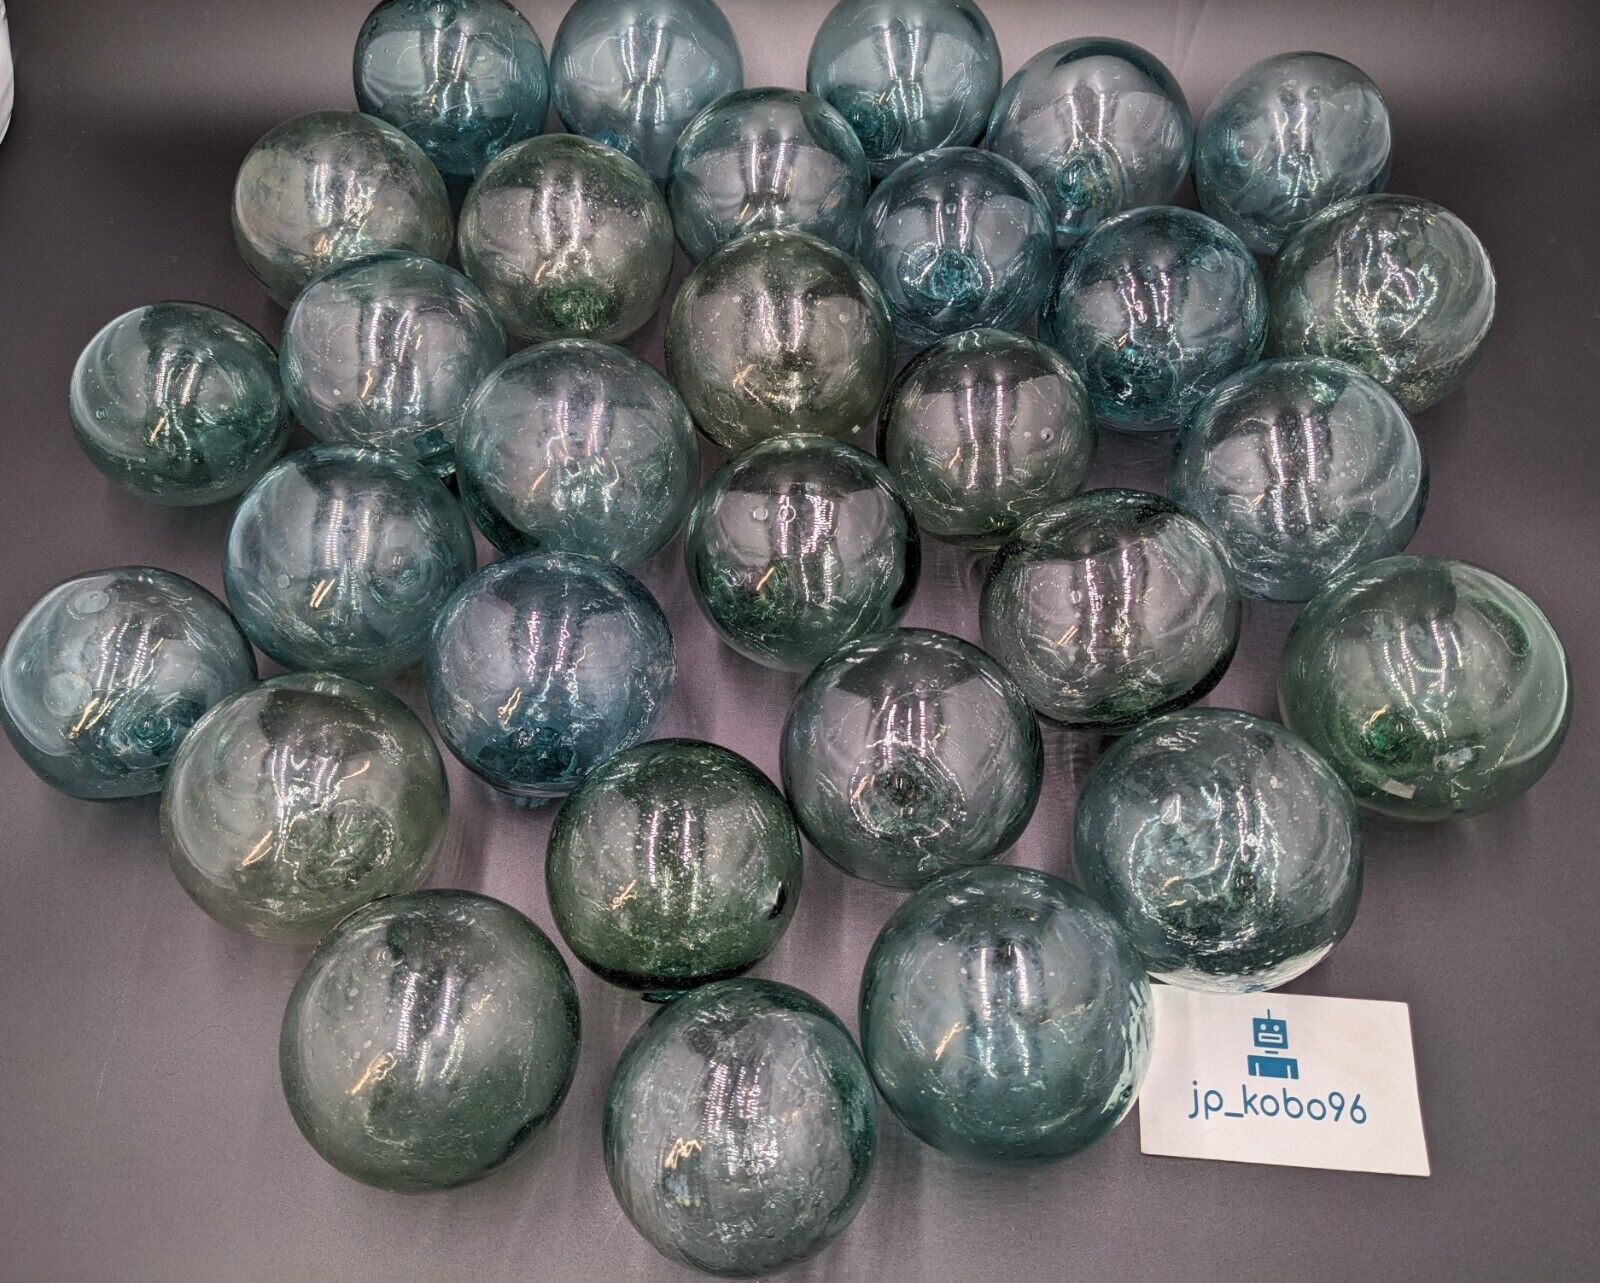 Lot of 30 Japanese Glass Fishing Float Balls 9 cm BULK set #1251